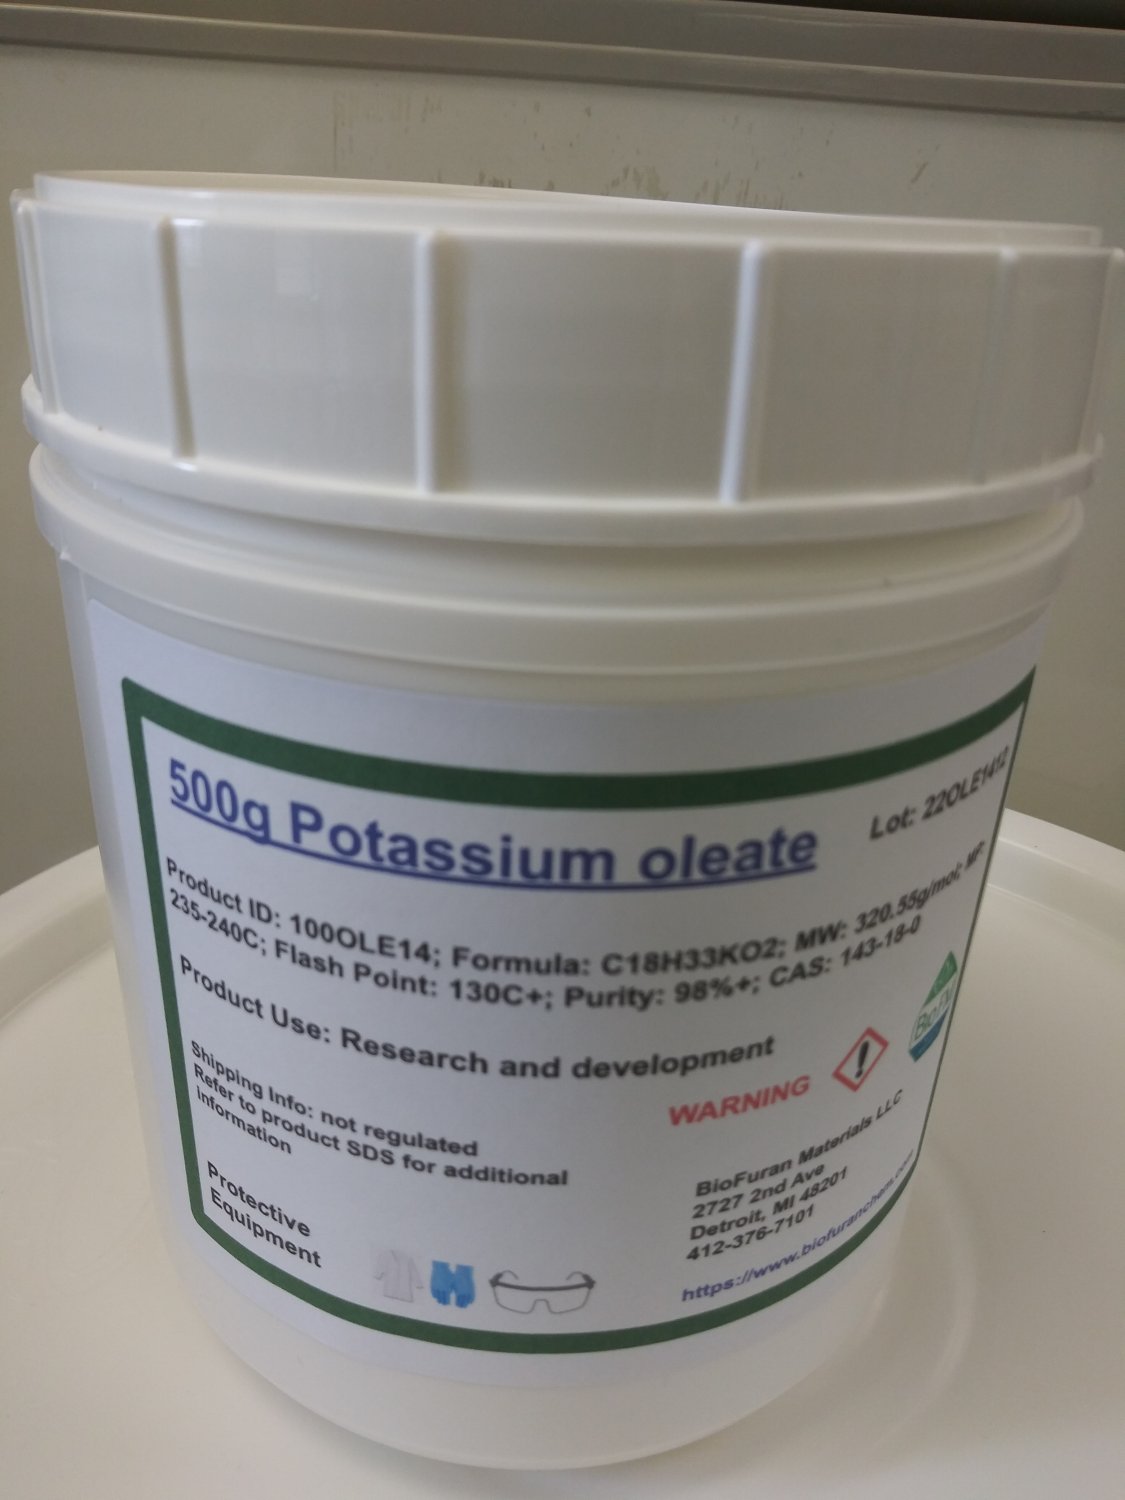 500g Potassium Oleate